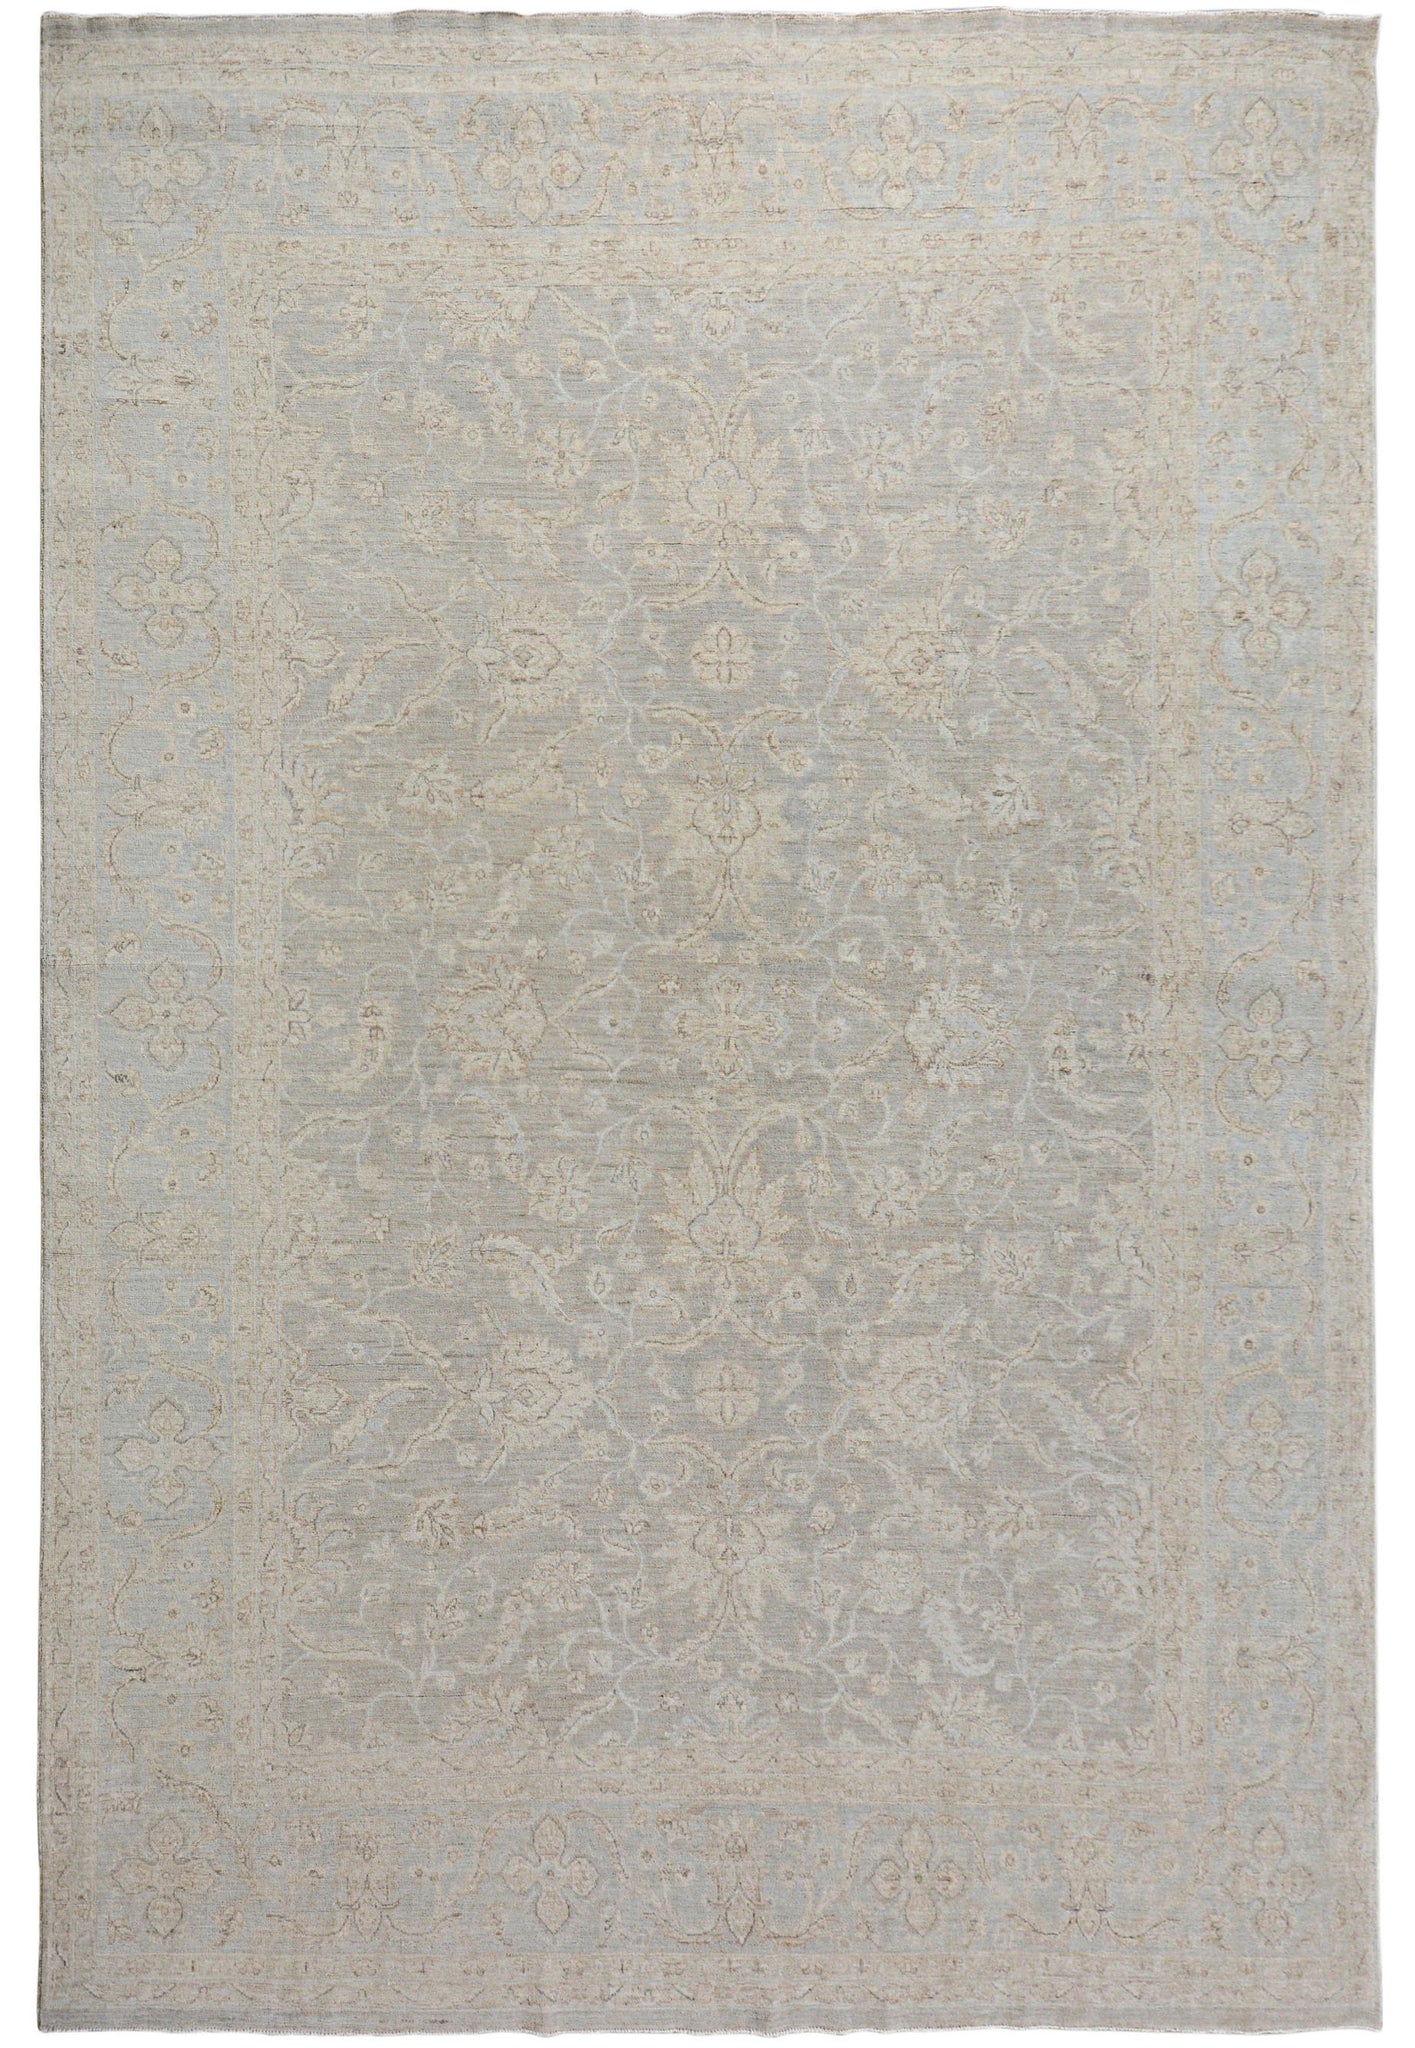 Handmade Afghan Chobi Rug | Bamyan Collection | 316 x 255 cm | 10'5" x 8'5"